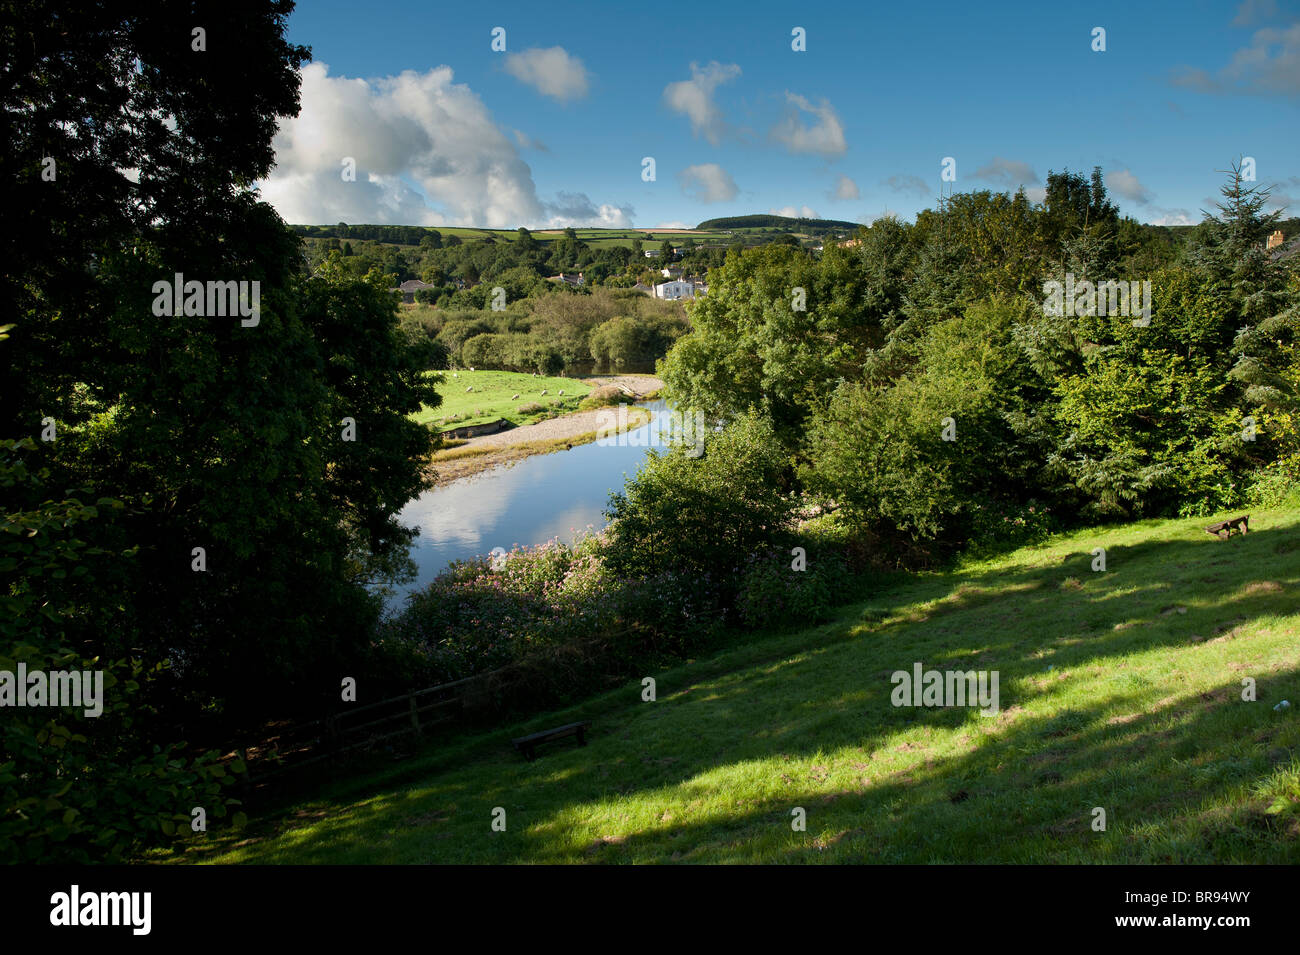 La rivière Teifi / Tivy, Newcastle Emlyn, Ceredigion Pays de Galles UK Banque D'Images